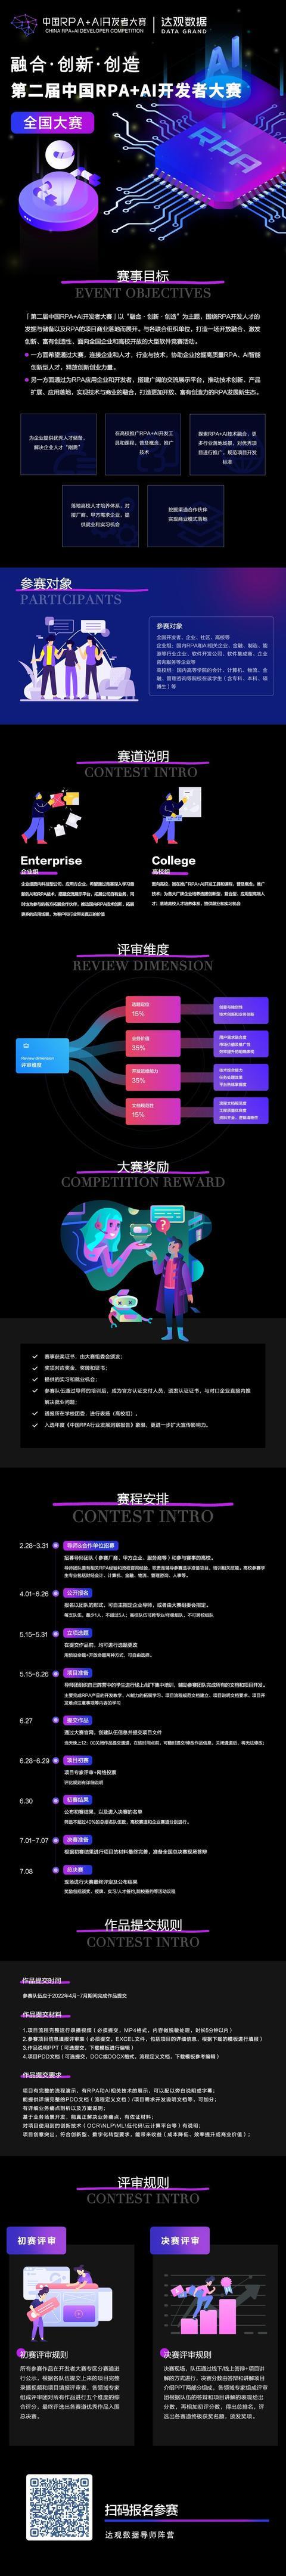 「第二届中国RPA+AI开发者大赛」正式启动，达观数据阵营欢迎参加